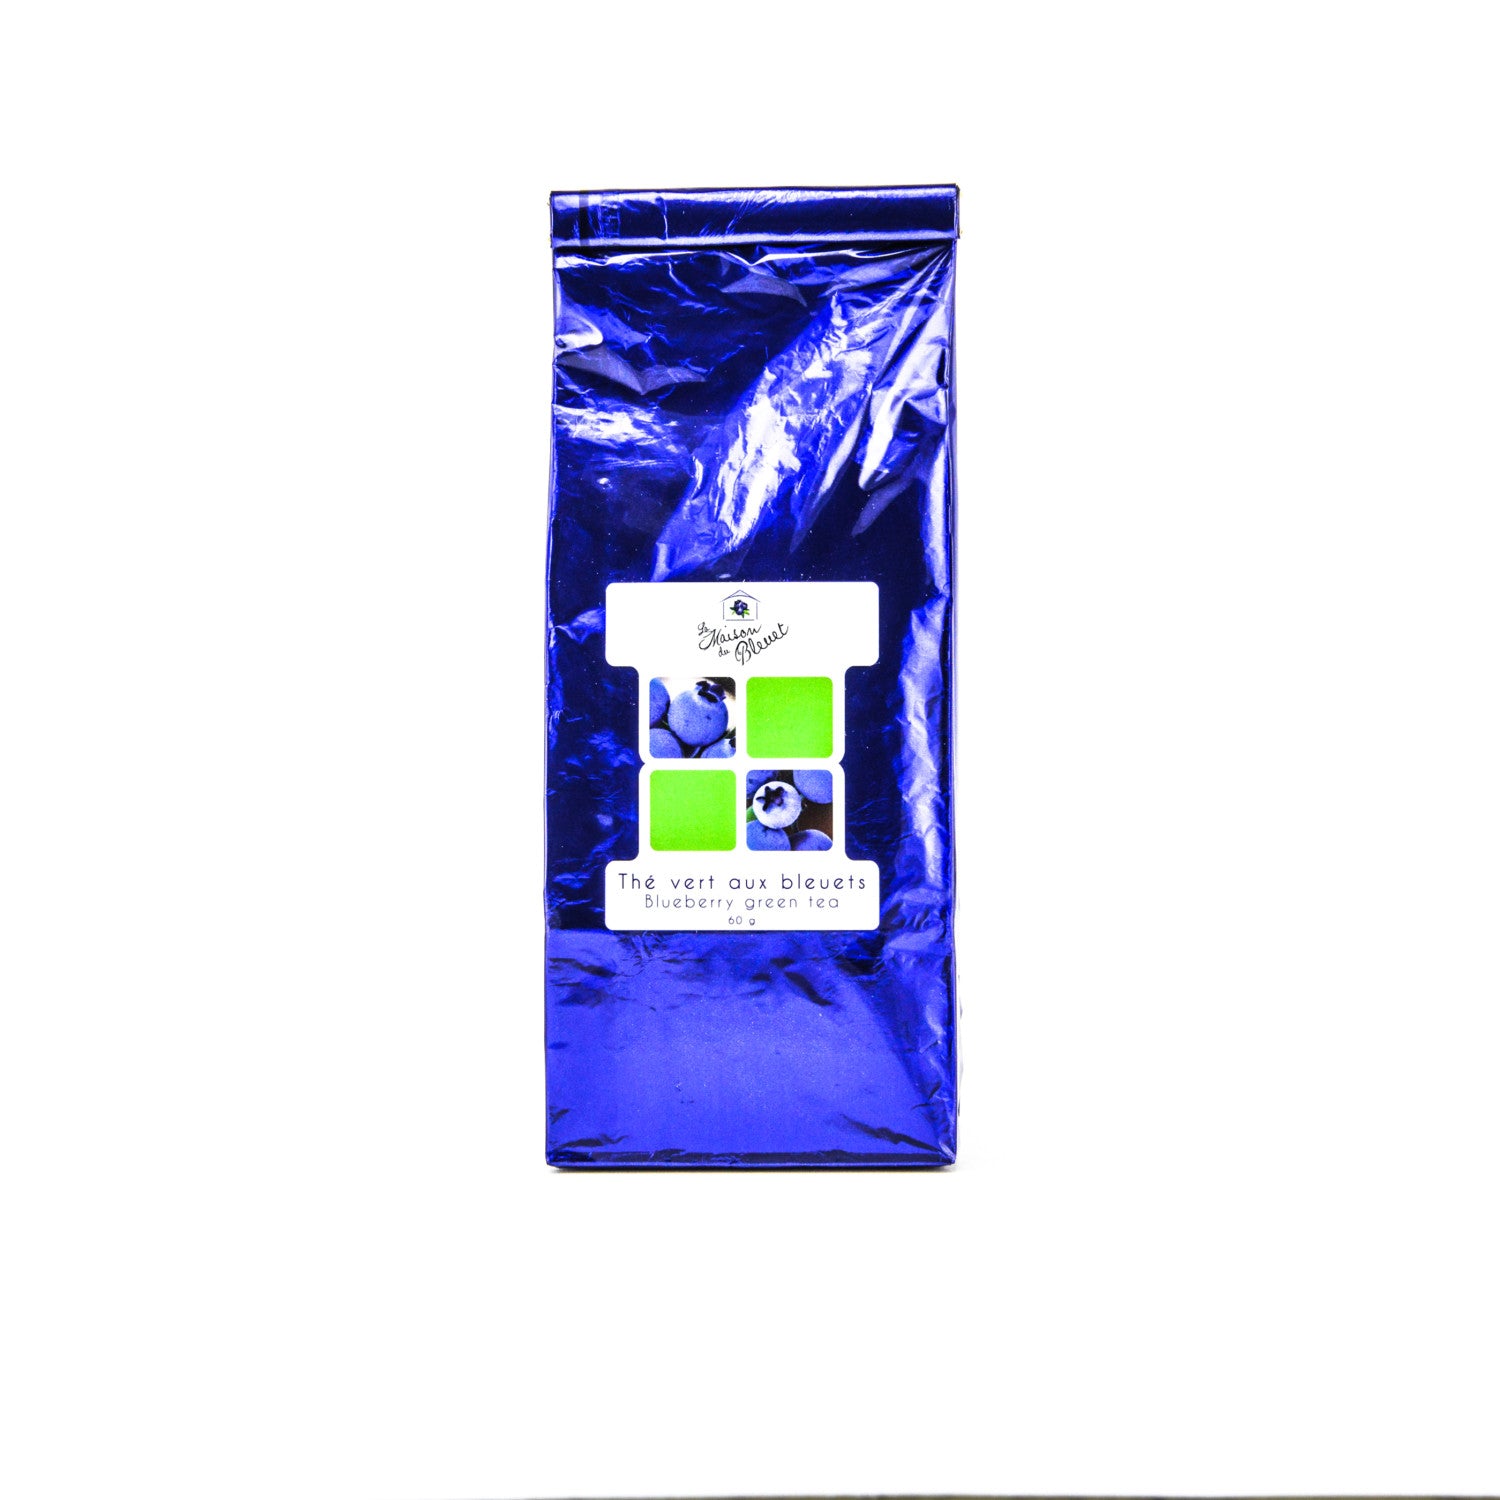 Blueberry Green Tea by Maison du Bleuet (60 g)